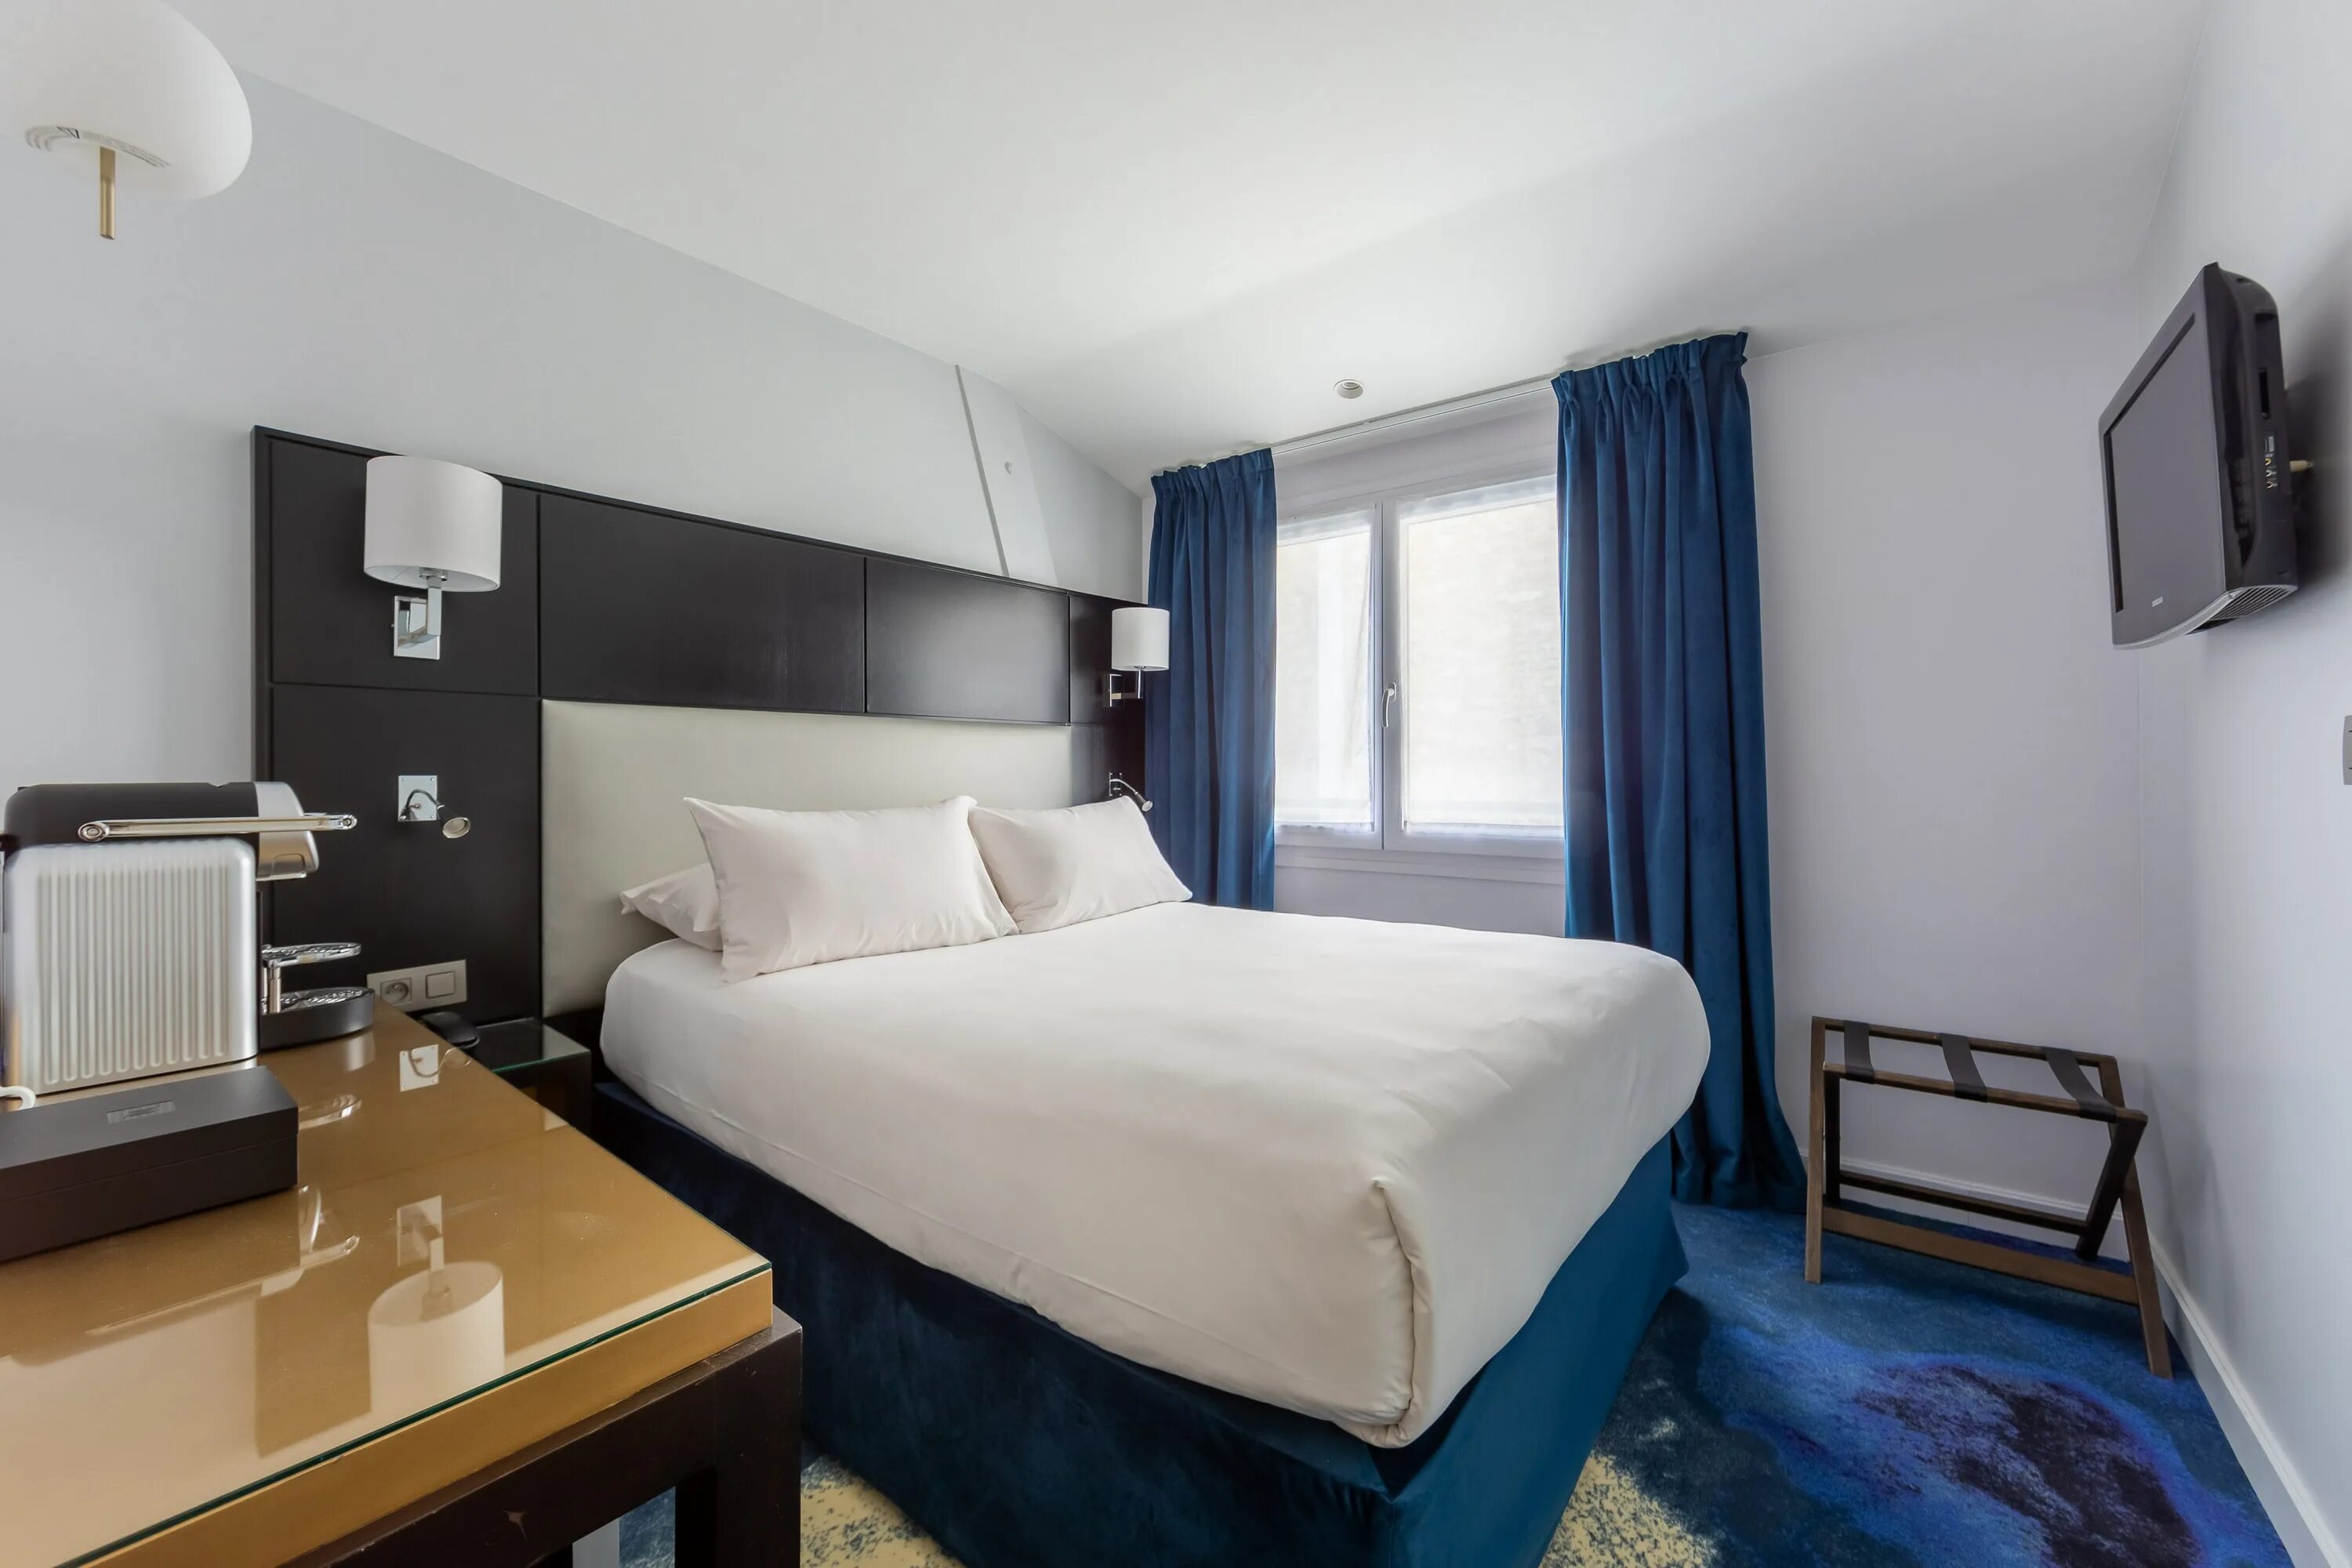 Room rooms разница. Сингл комната в отеле. Отель Istria Montparnasse. Сингл Роом. Single Room и Double Room разница.